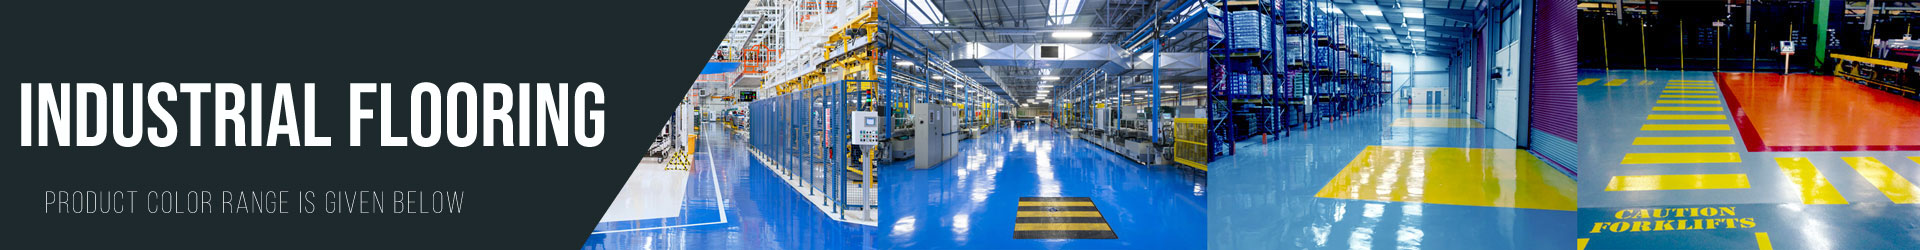 Industrial Floor